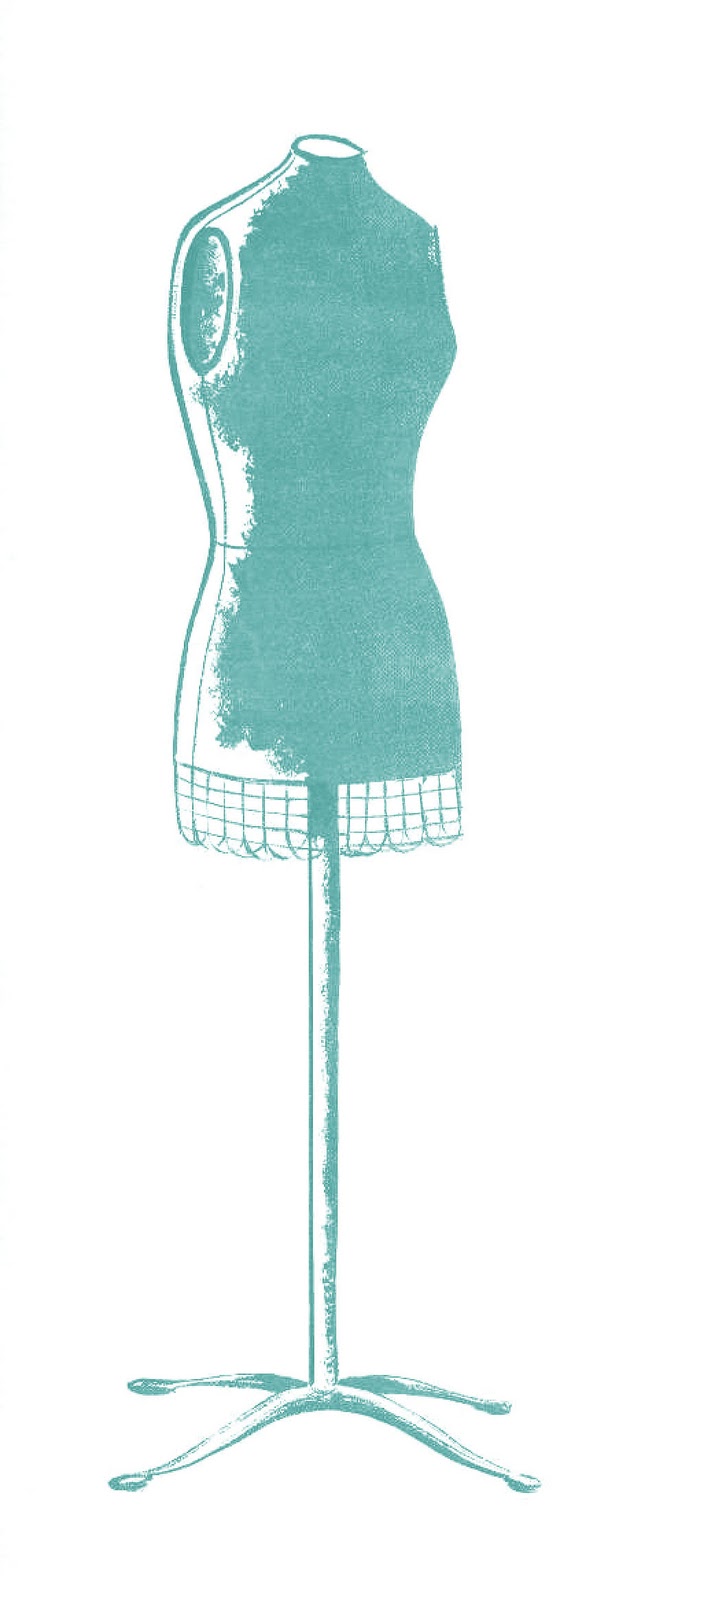 vintage dresses clipart - photo #49